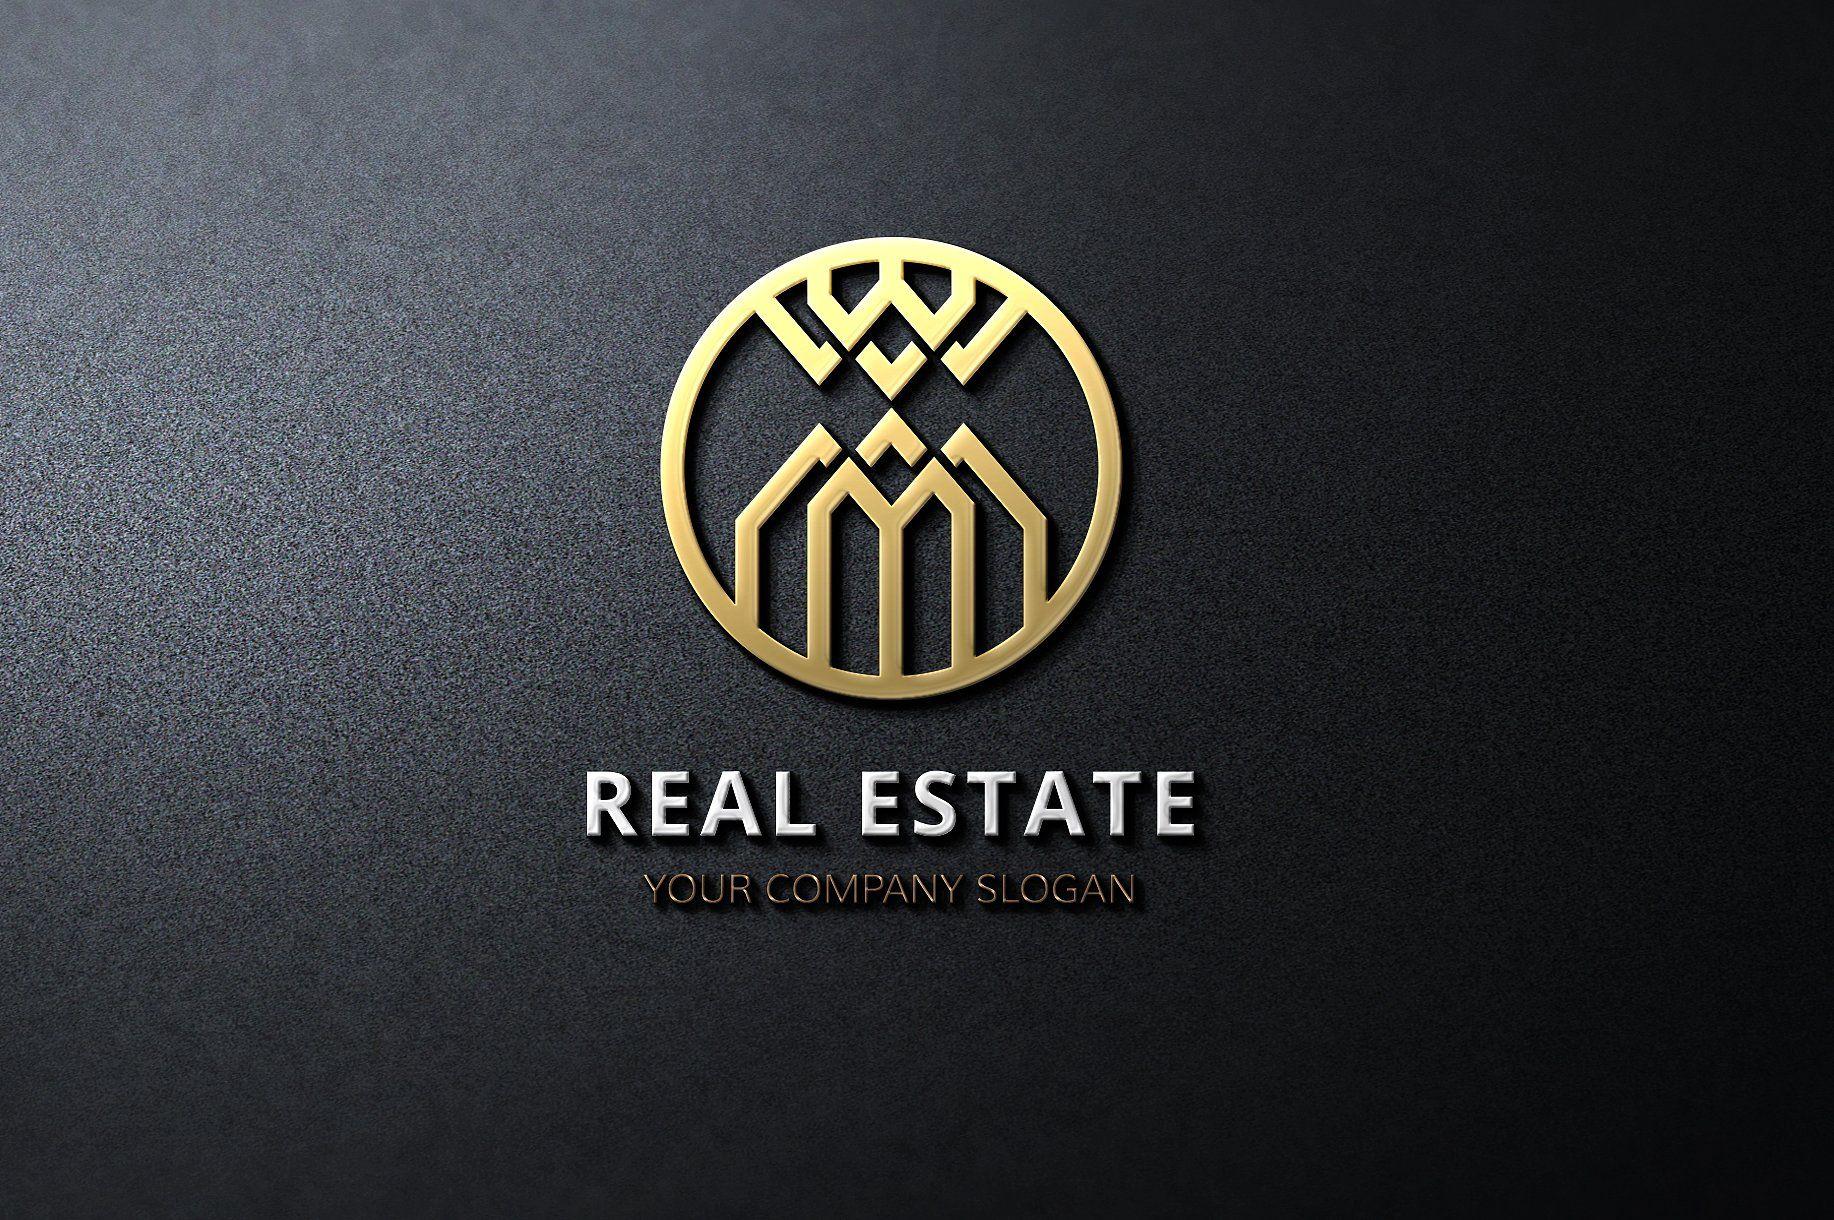 Luxury Real Estate Logo - Luxury real estate logos